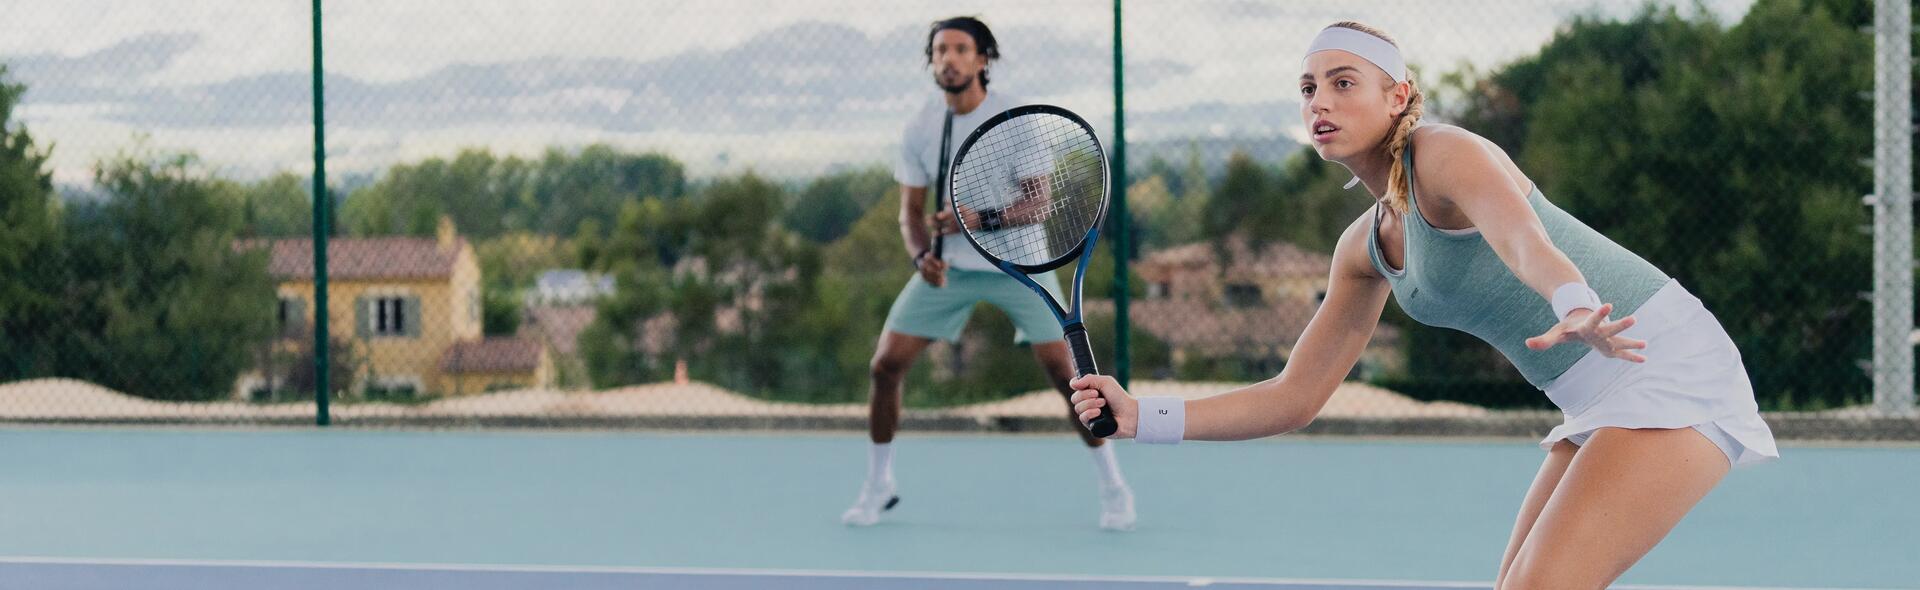 kobieta i mężczyzna w odzieży tenisowej grający w tenisa na korcie